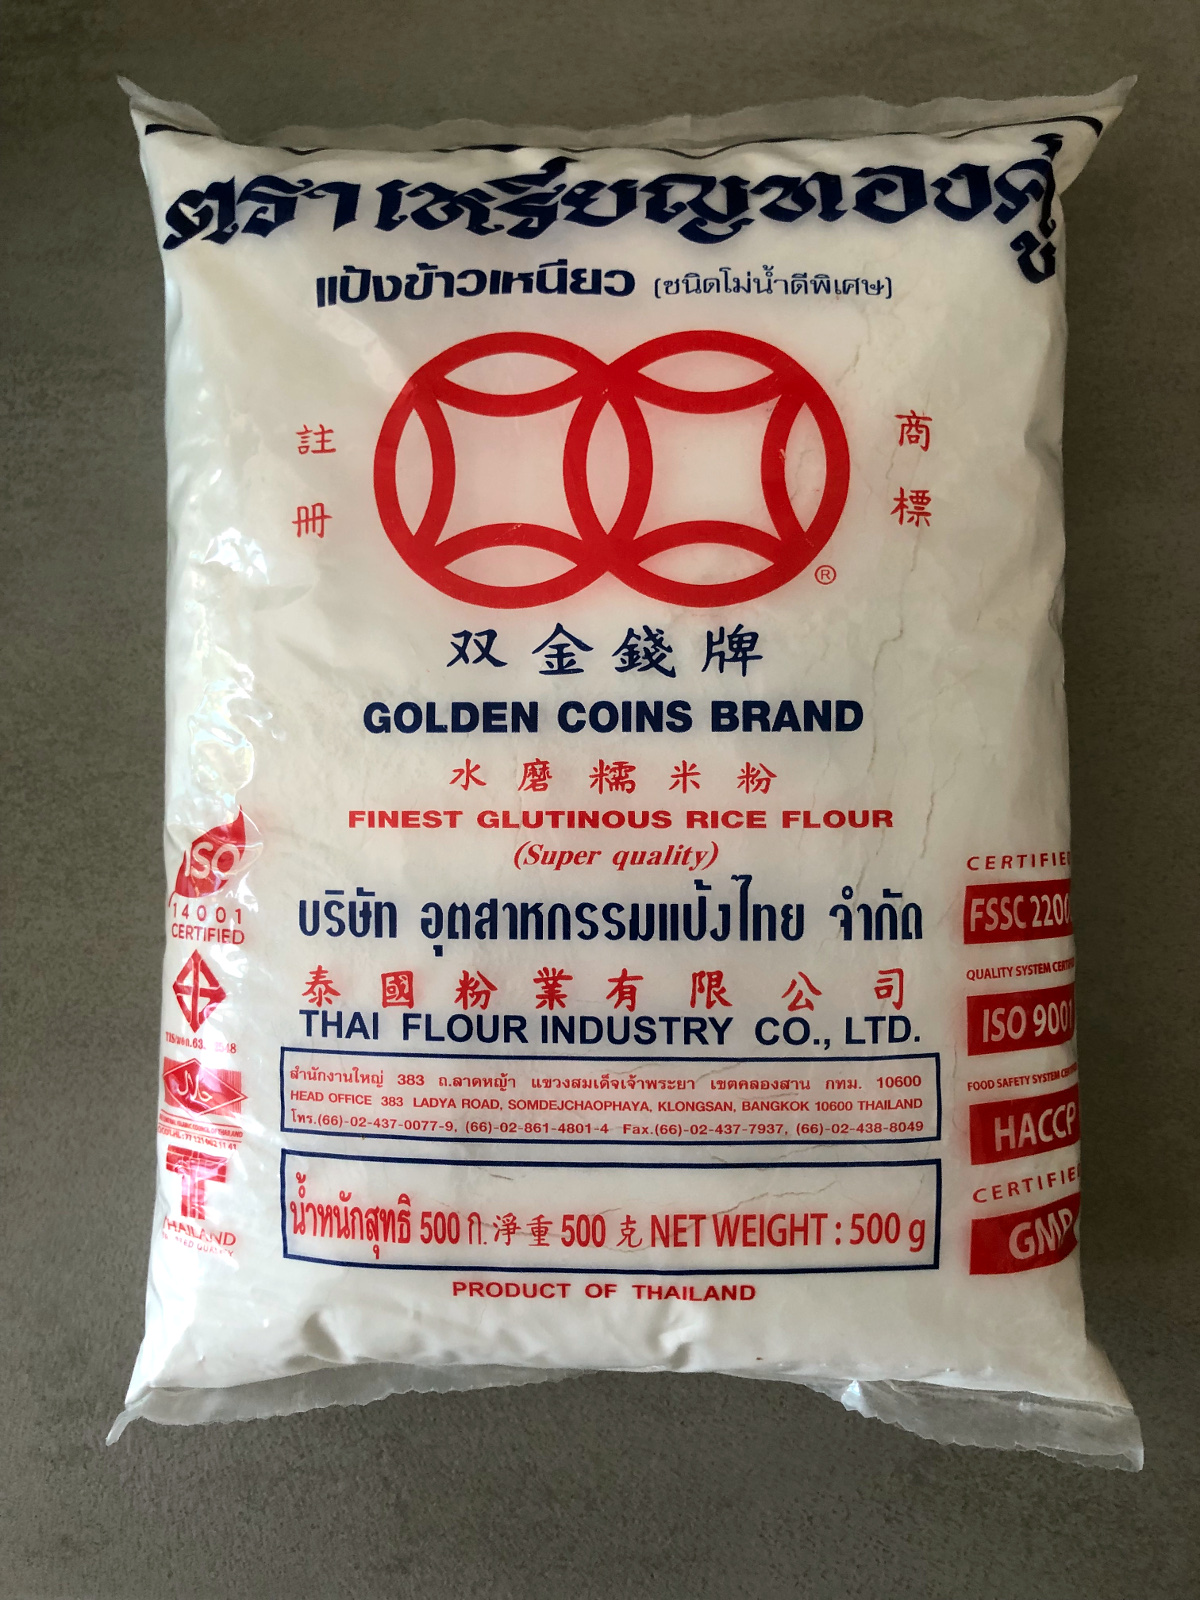 Tajska mąka z ryżu kleistego (glutinous rice flour)